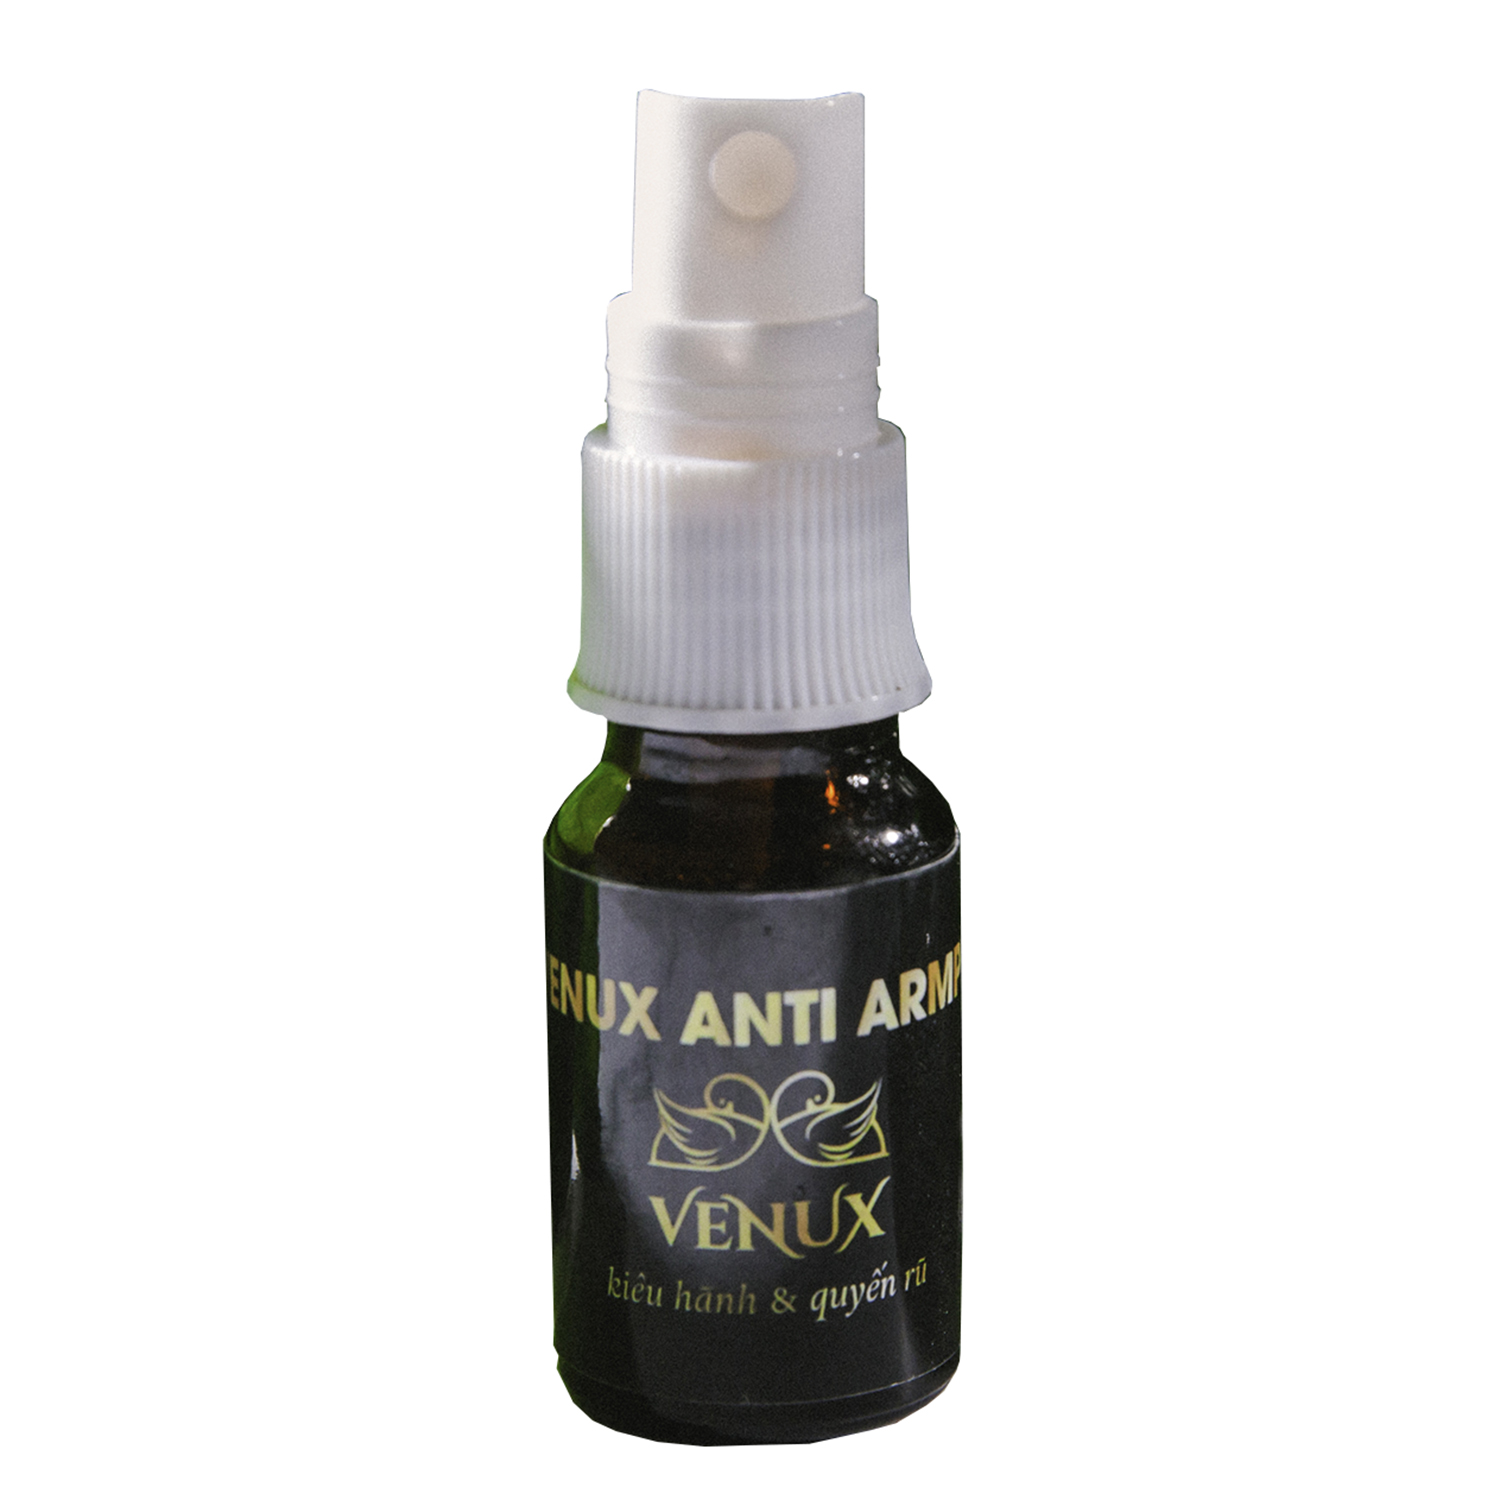 Venux anti armpit cao cấp khử mùi hiệu quả hôi nách mồ hôi Lăn khử mùi  ngăn mùi hôi nách không làm ố quần áo, làm sáng vùng da dưới cánh tay, khô thoáng tức thì, hương thơm nhẹ dịu